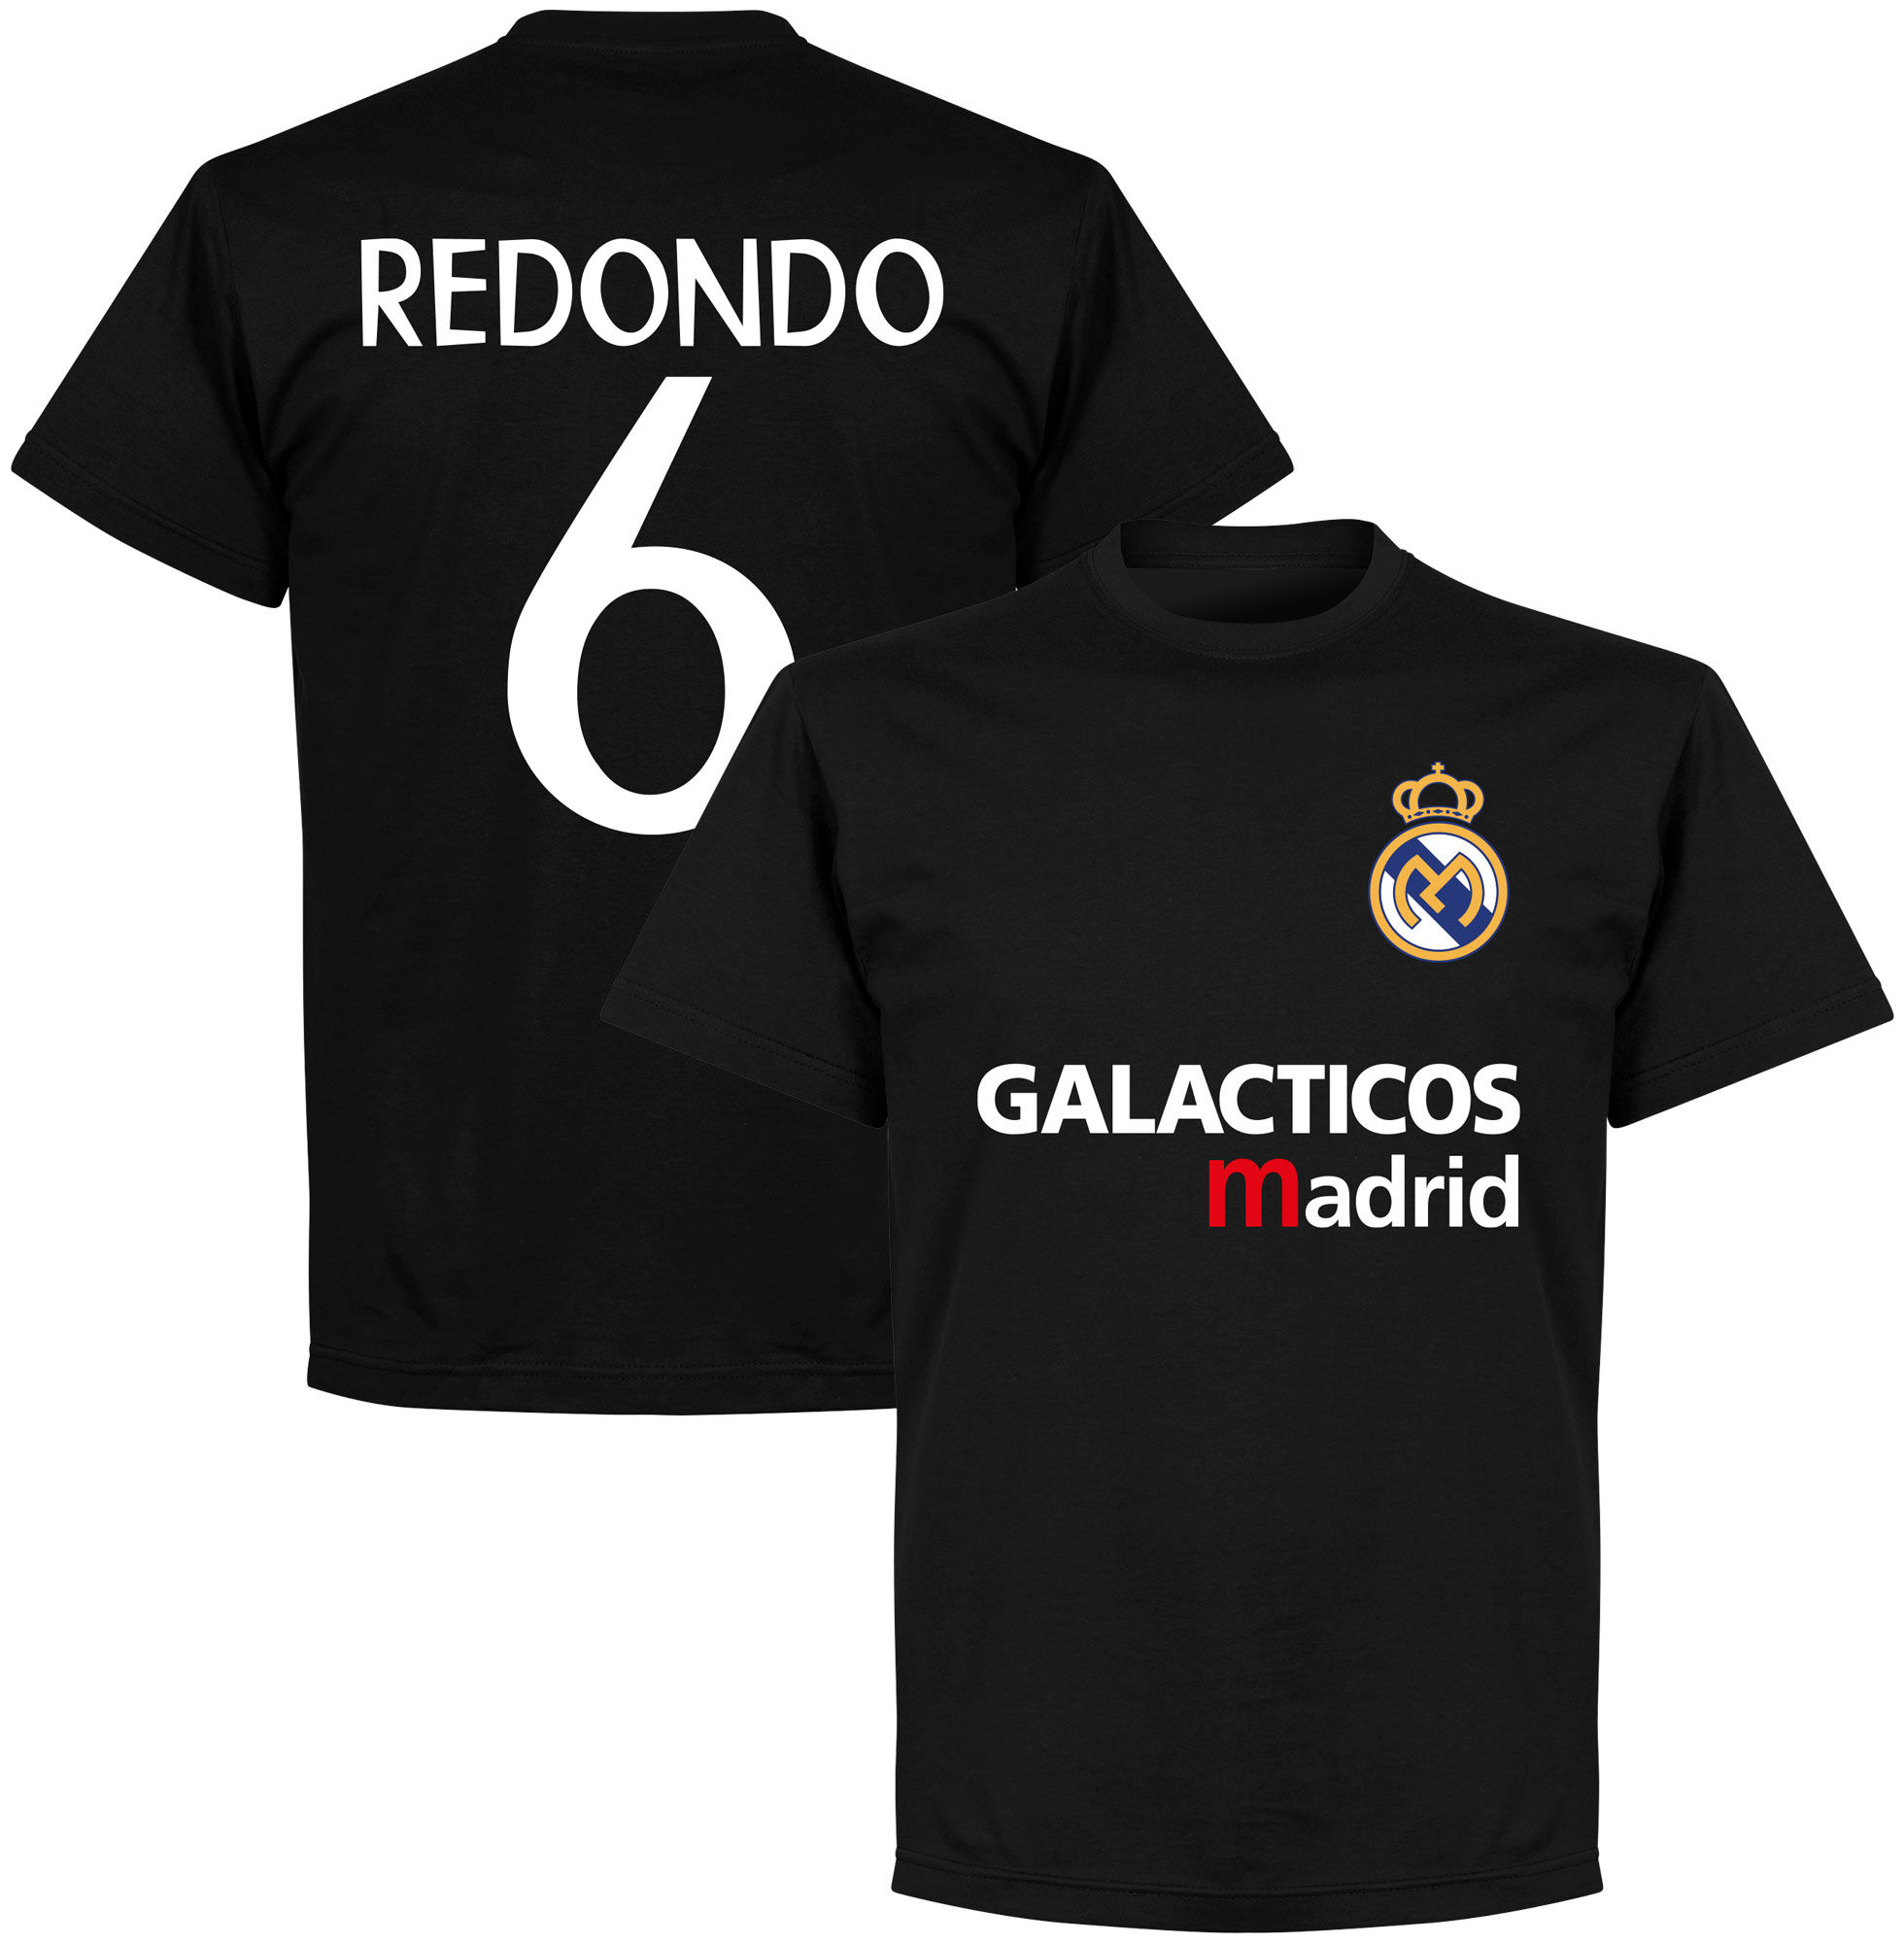 Real Madrid - Tričko "Galácticos Madrid" - Fernando Redondo, číslo 6, černé